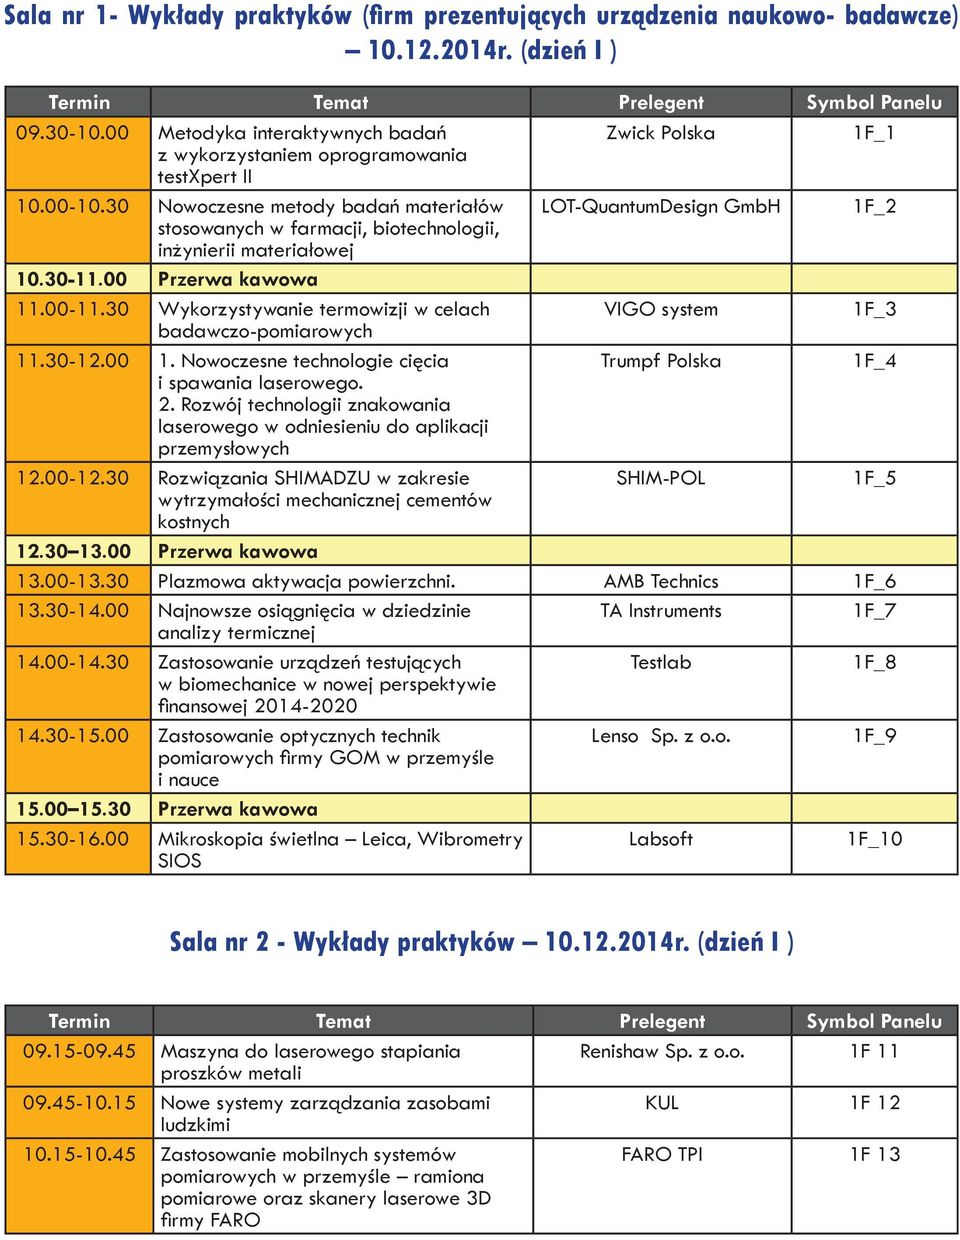 30 Nowoczesne metody badań materiałów LOT-QuantumDesign GmbH 1F_2 stosowanych w farmacji, biotechnologii, inżynierii materiałowej 10.30-11.00 Przerwa kawowa 11.00-11.